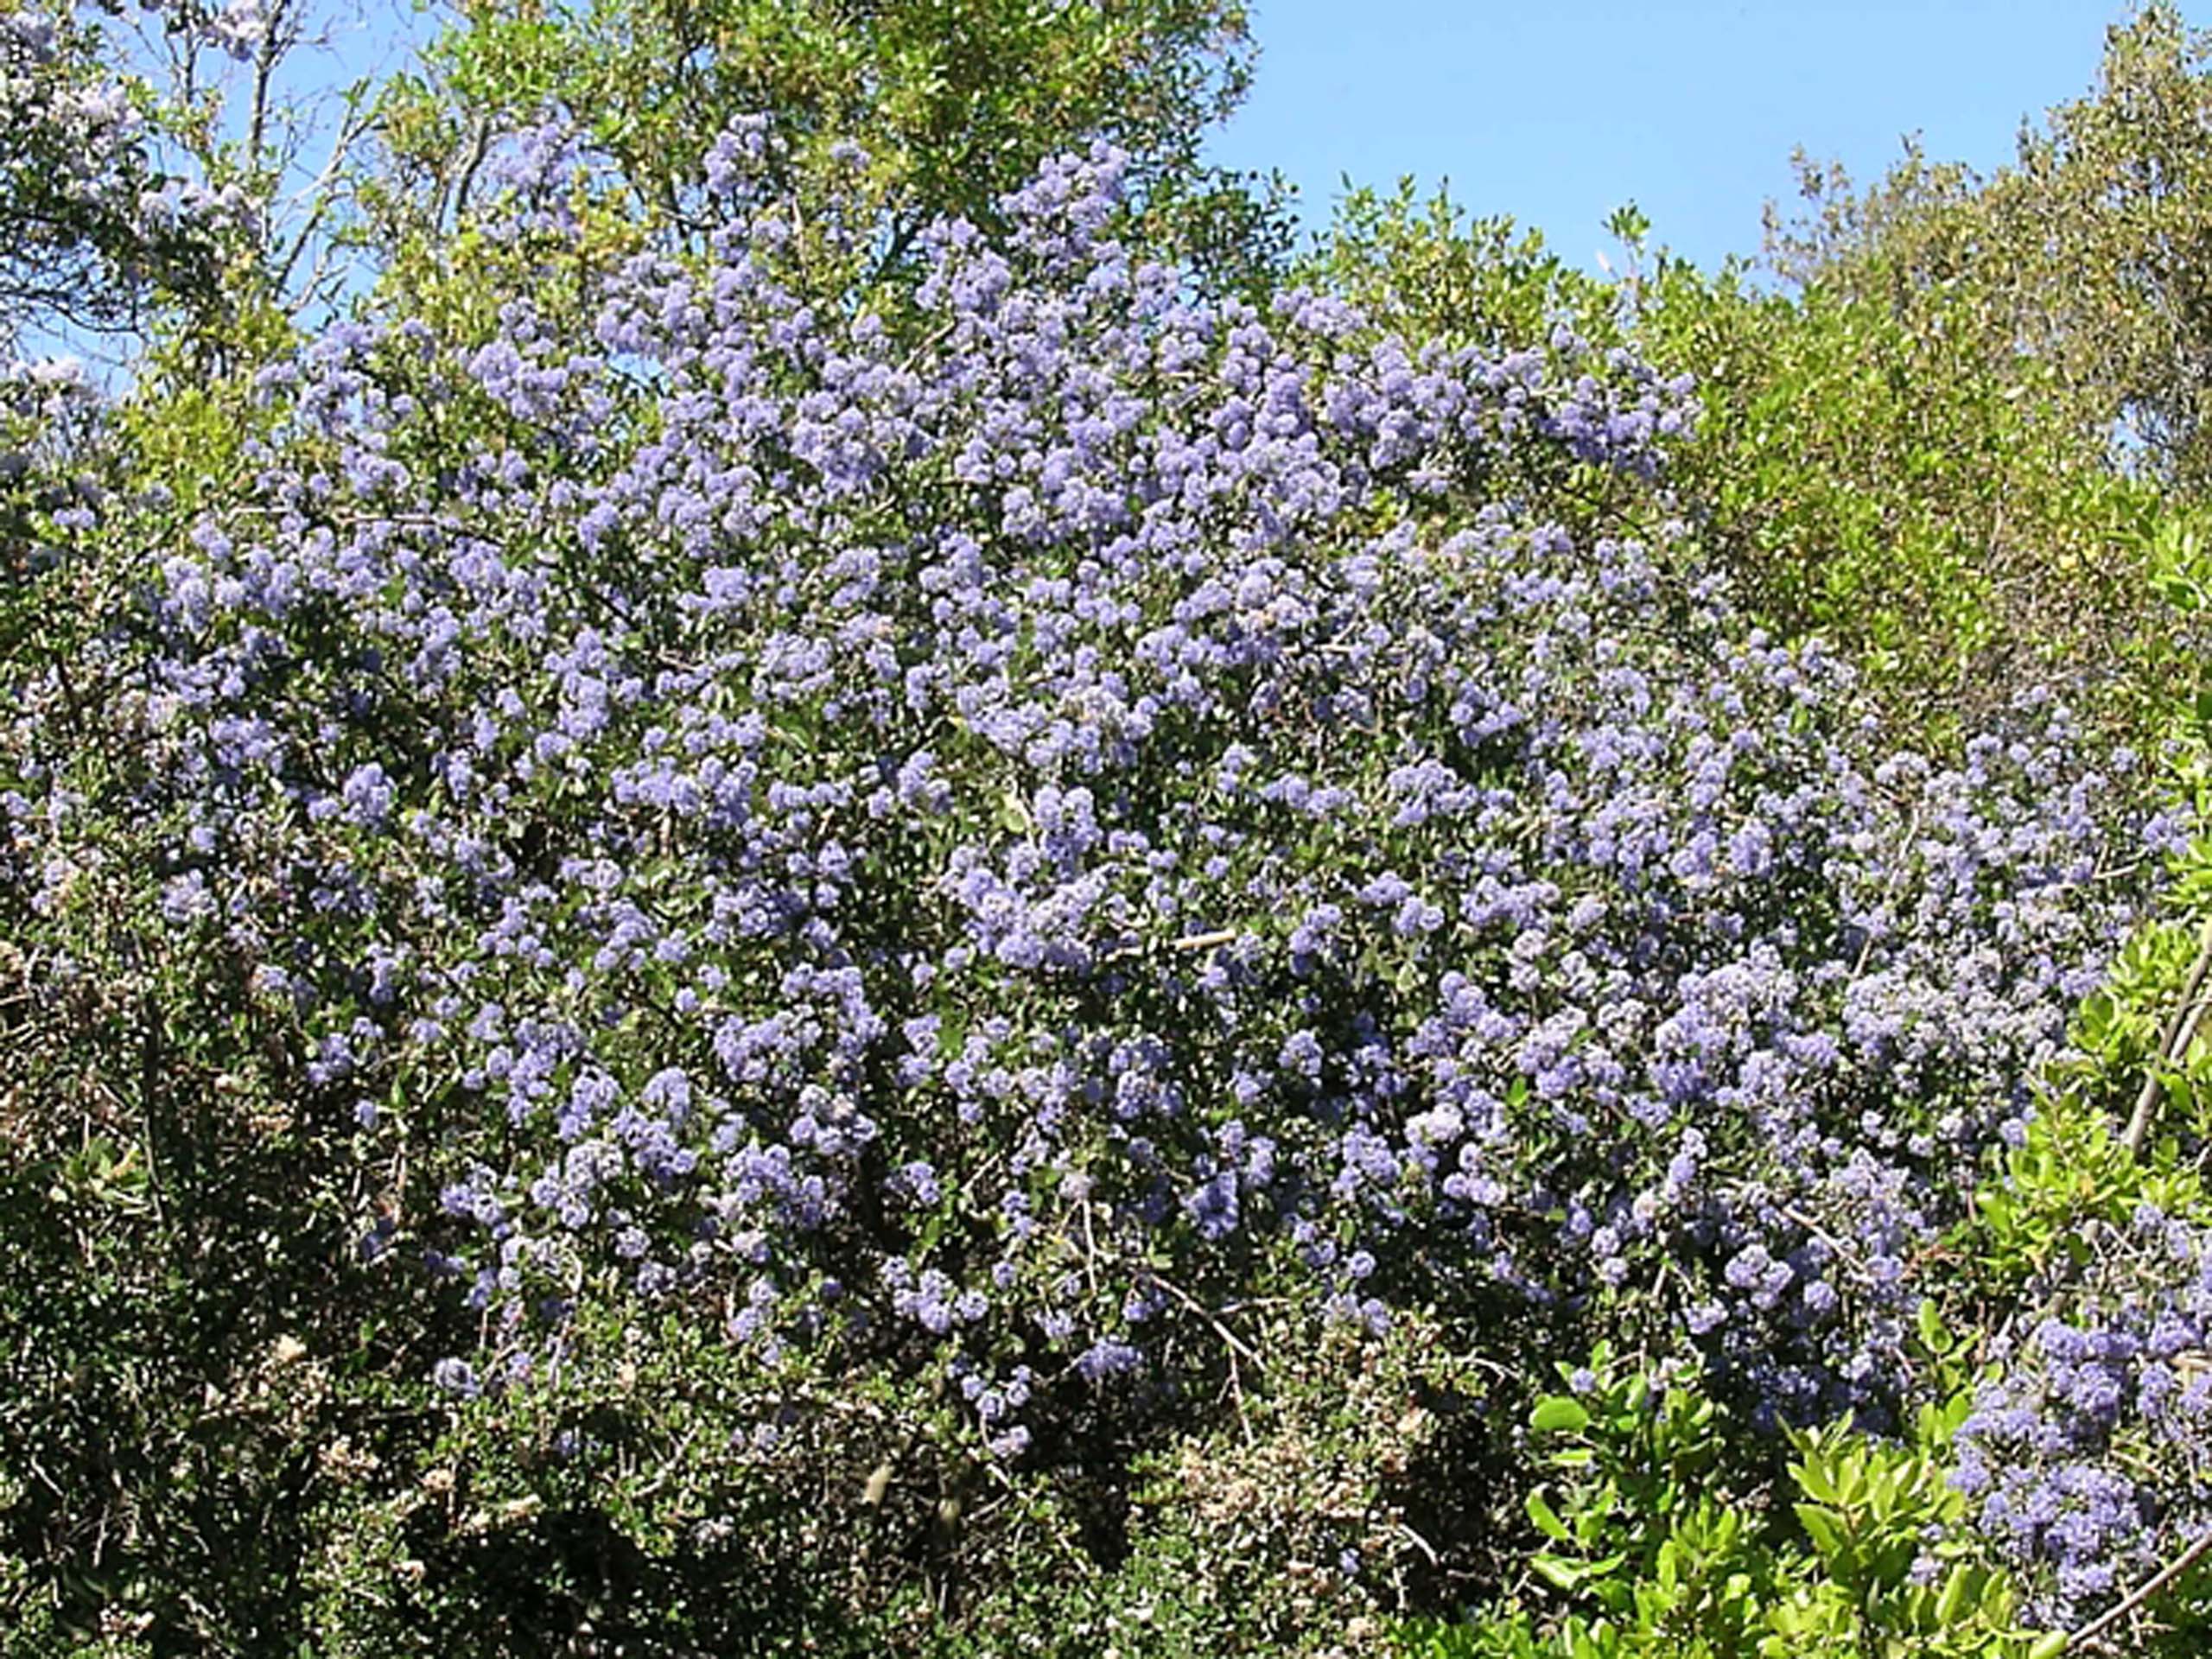 Blue-blossom ceanothus. S. Perry.